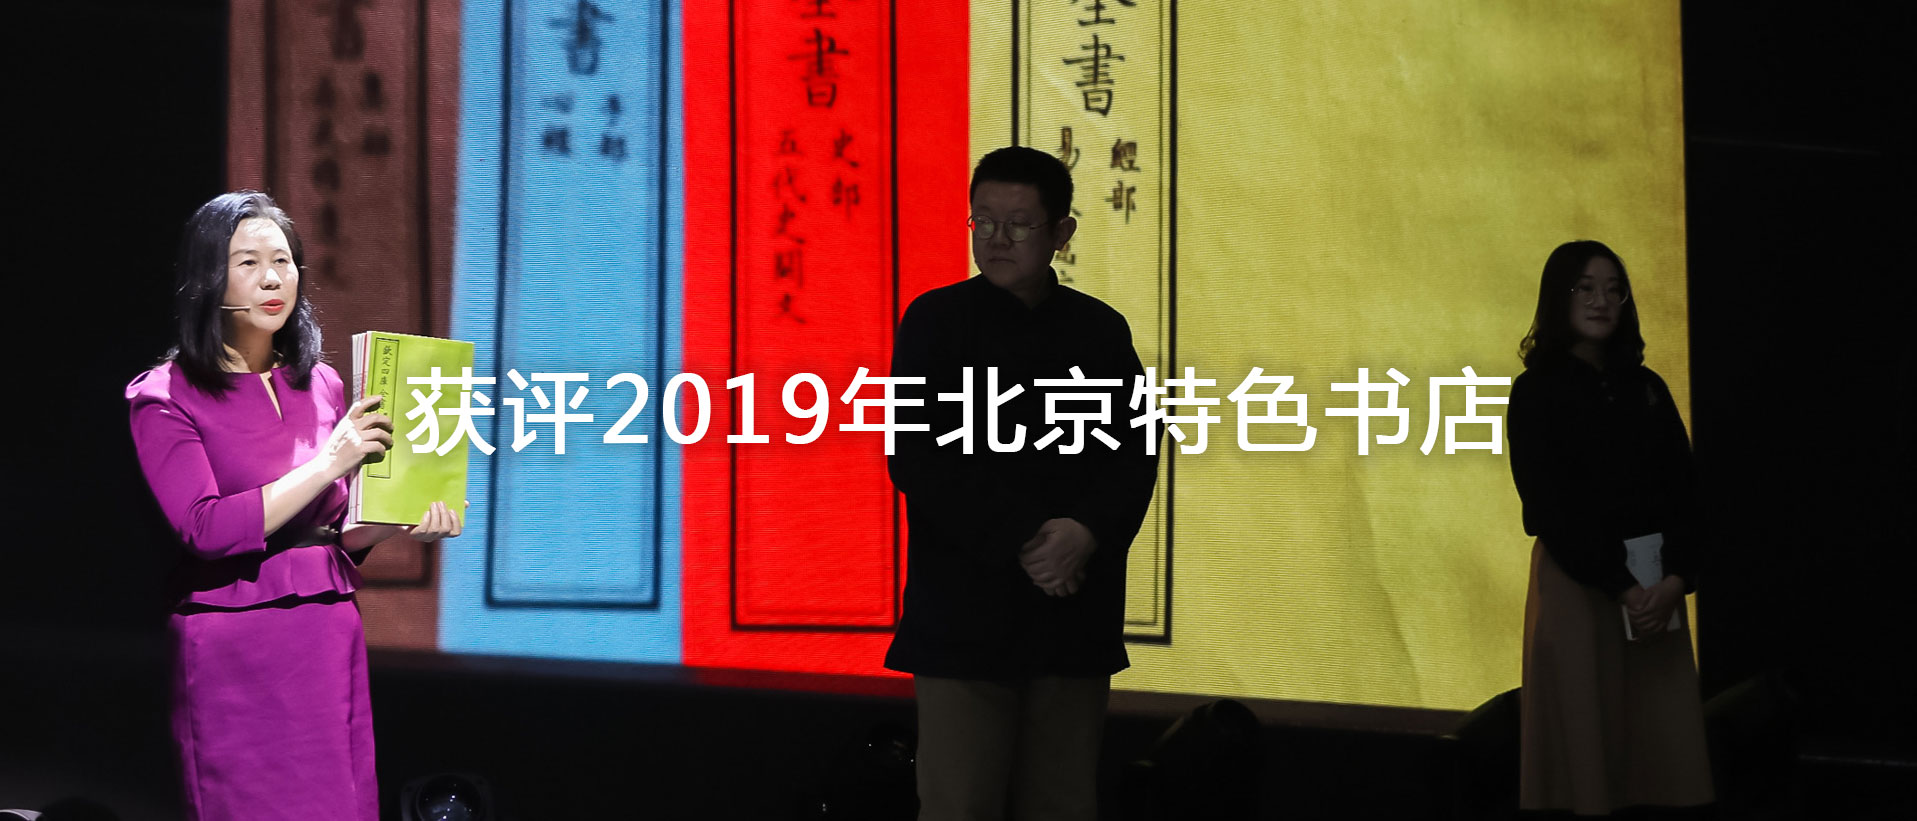 北京若愚文化京广桥分店荣膺“北京市2019年特色书店”称号